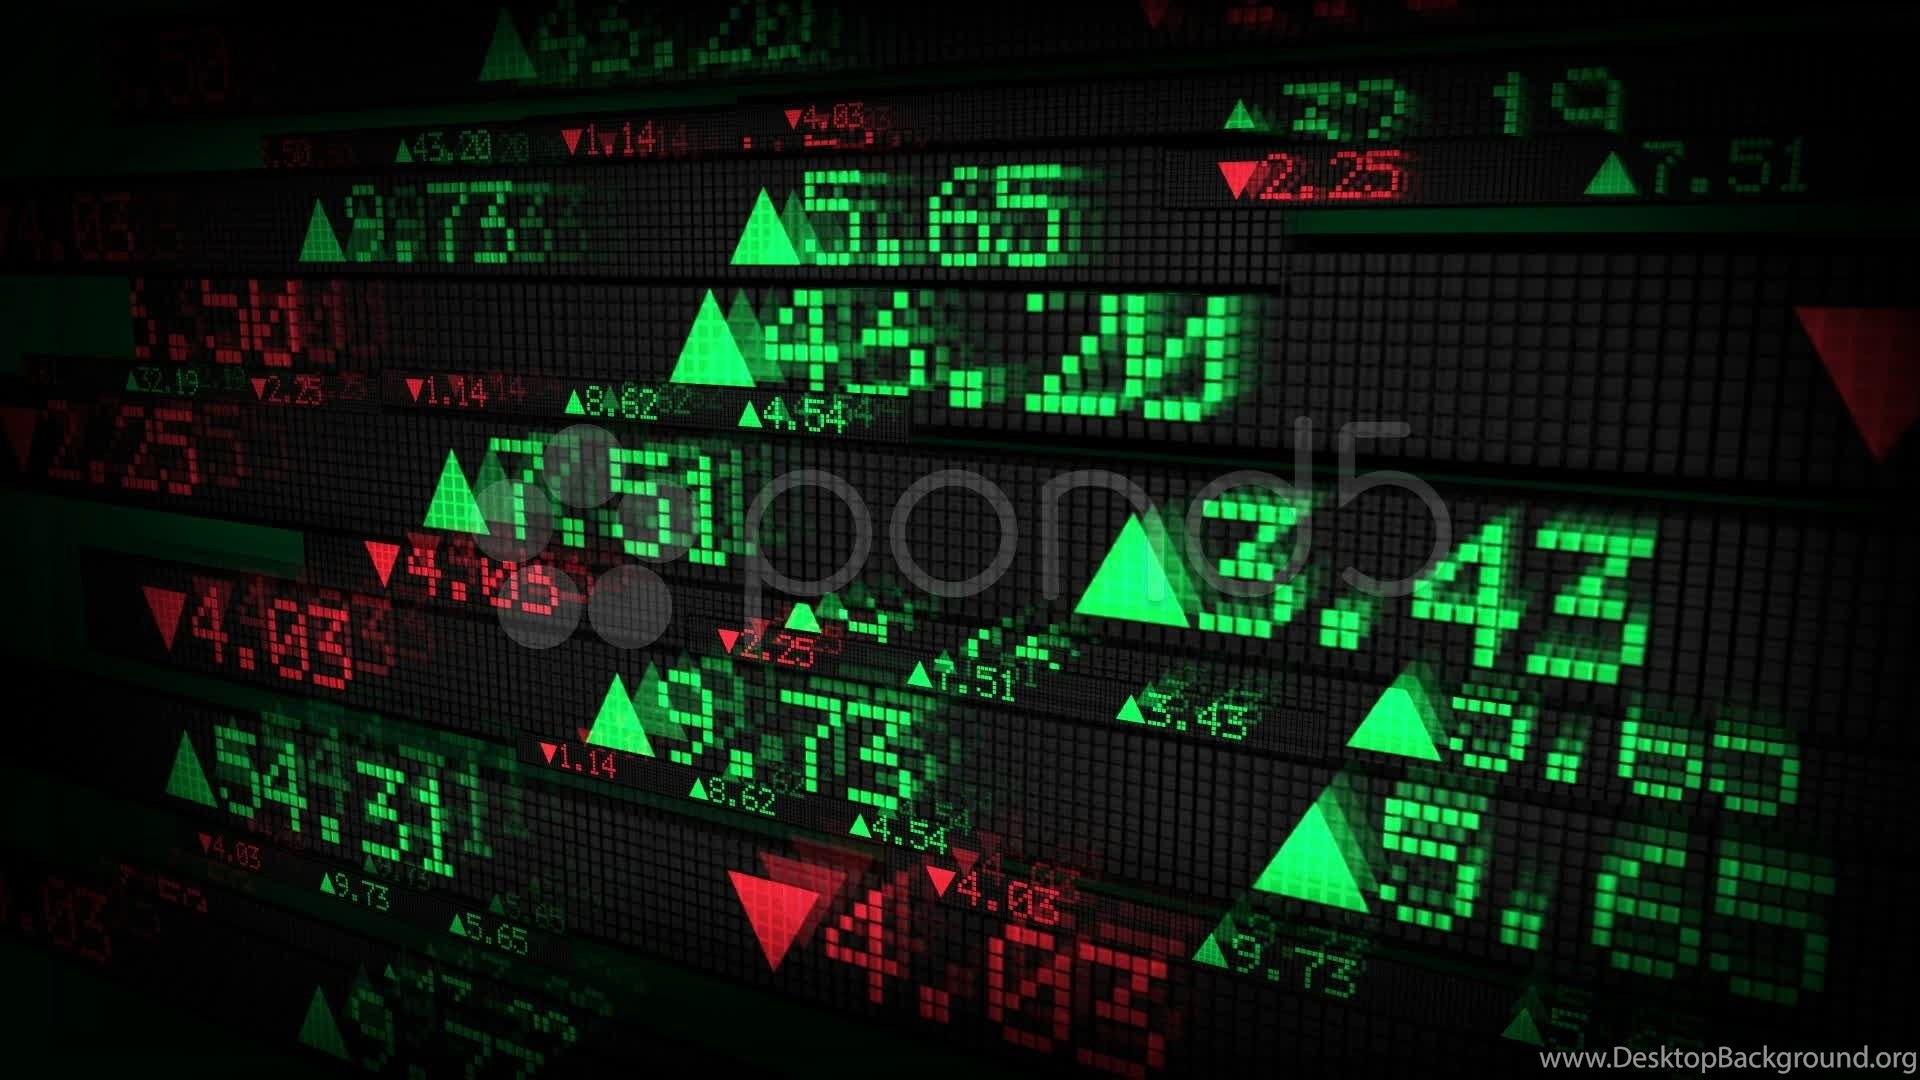 mercato azionario wallpaper hd,dispositivo di visualizzazione,tecnologia,display a led,elettronica,segnaletica